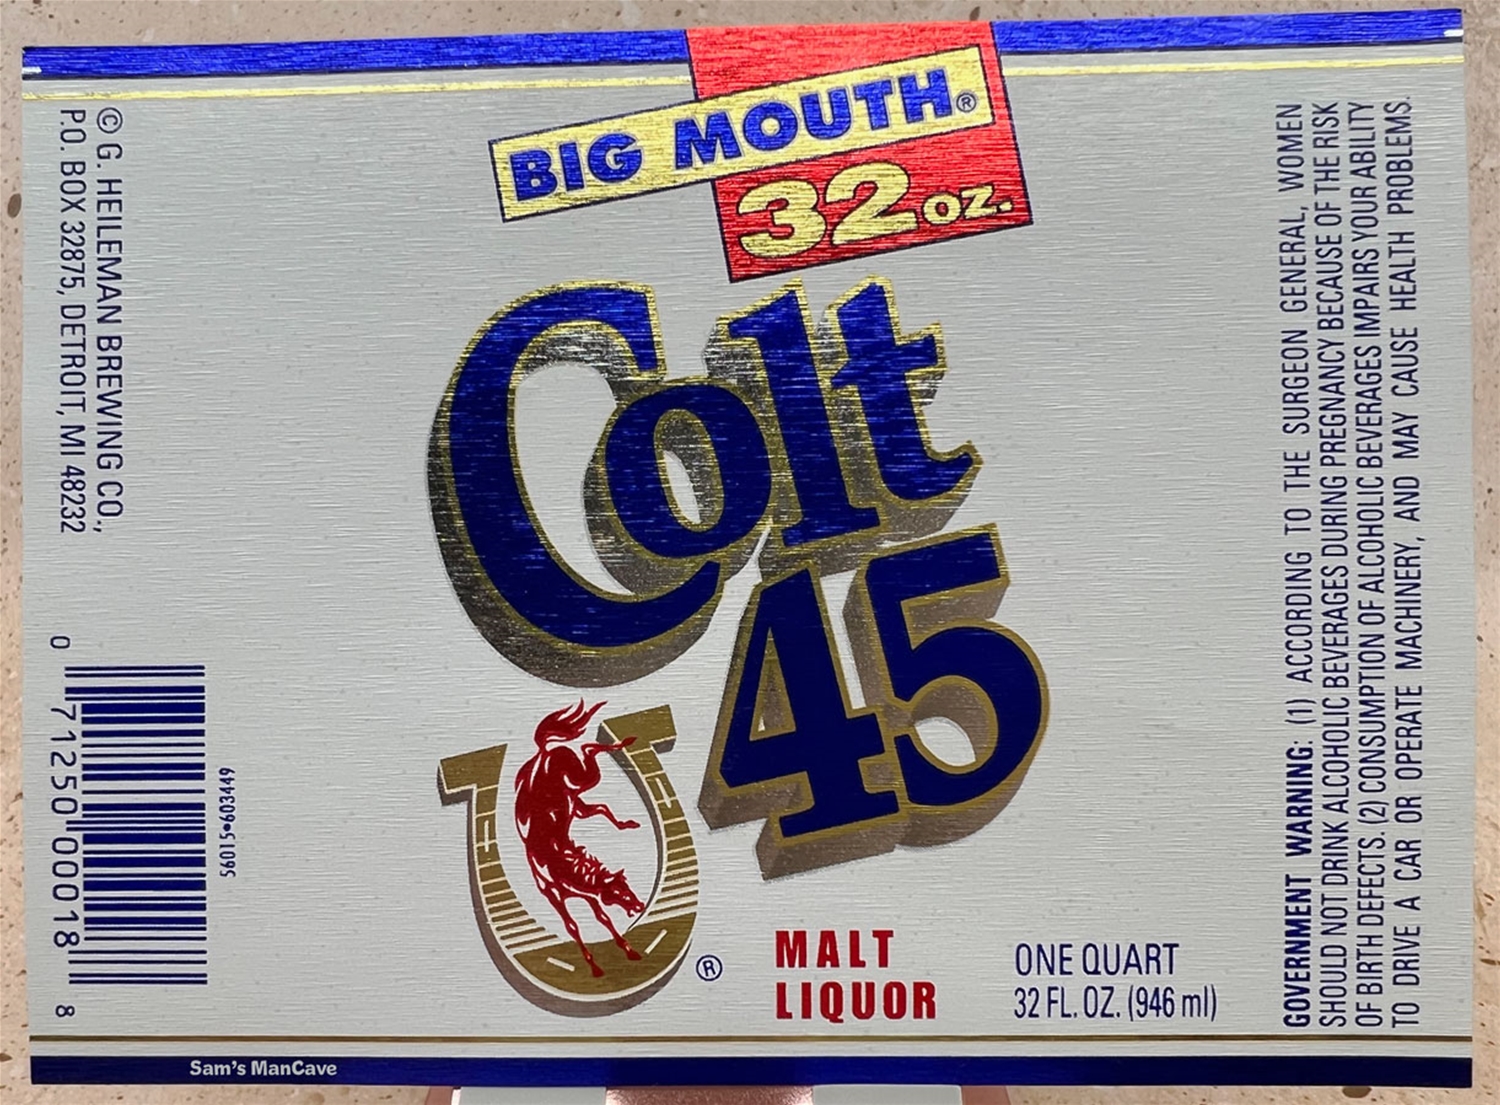 Colt 45 Double Malt Liquor Big Mouth Label